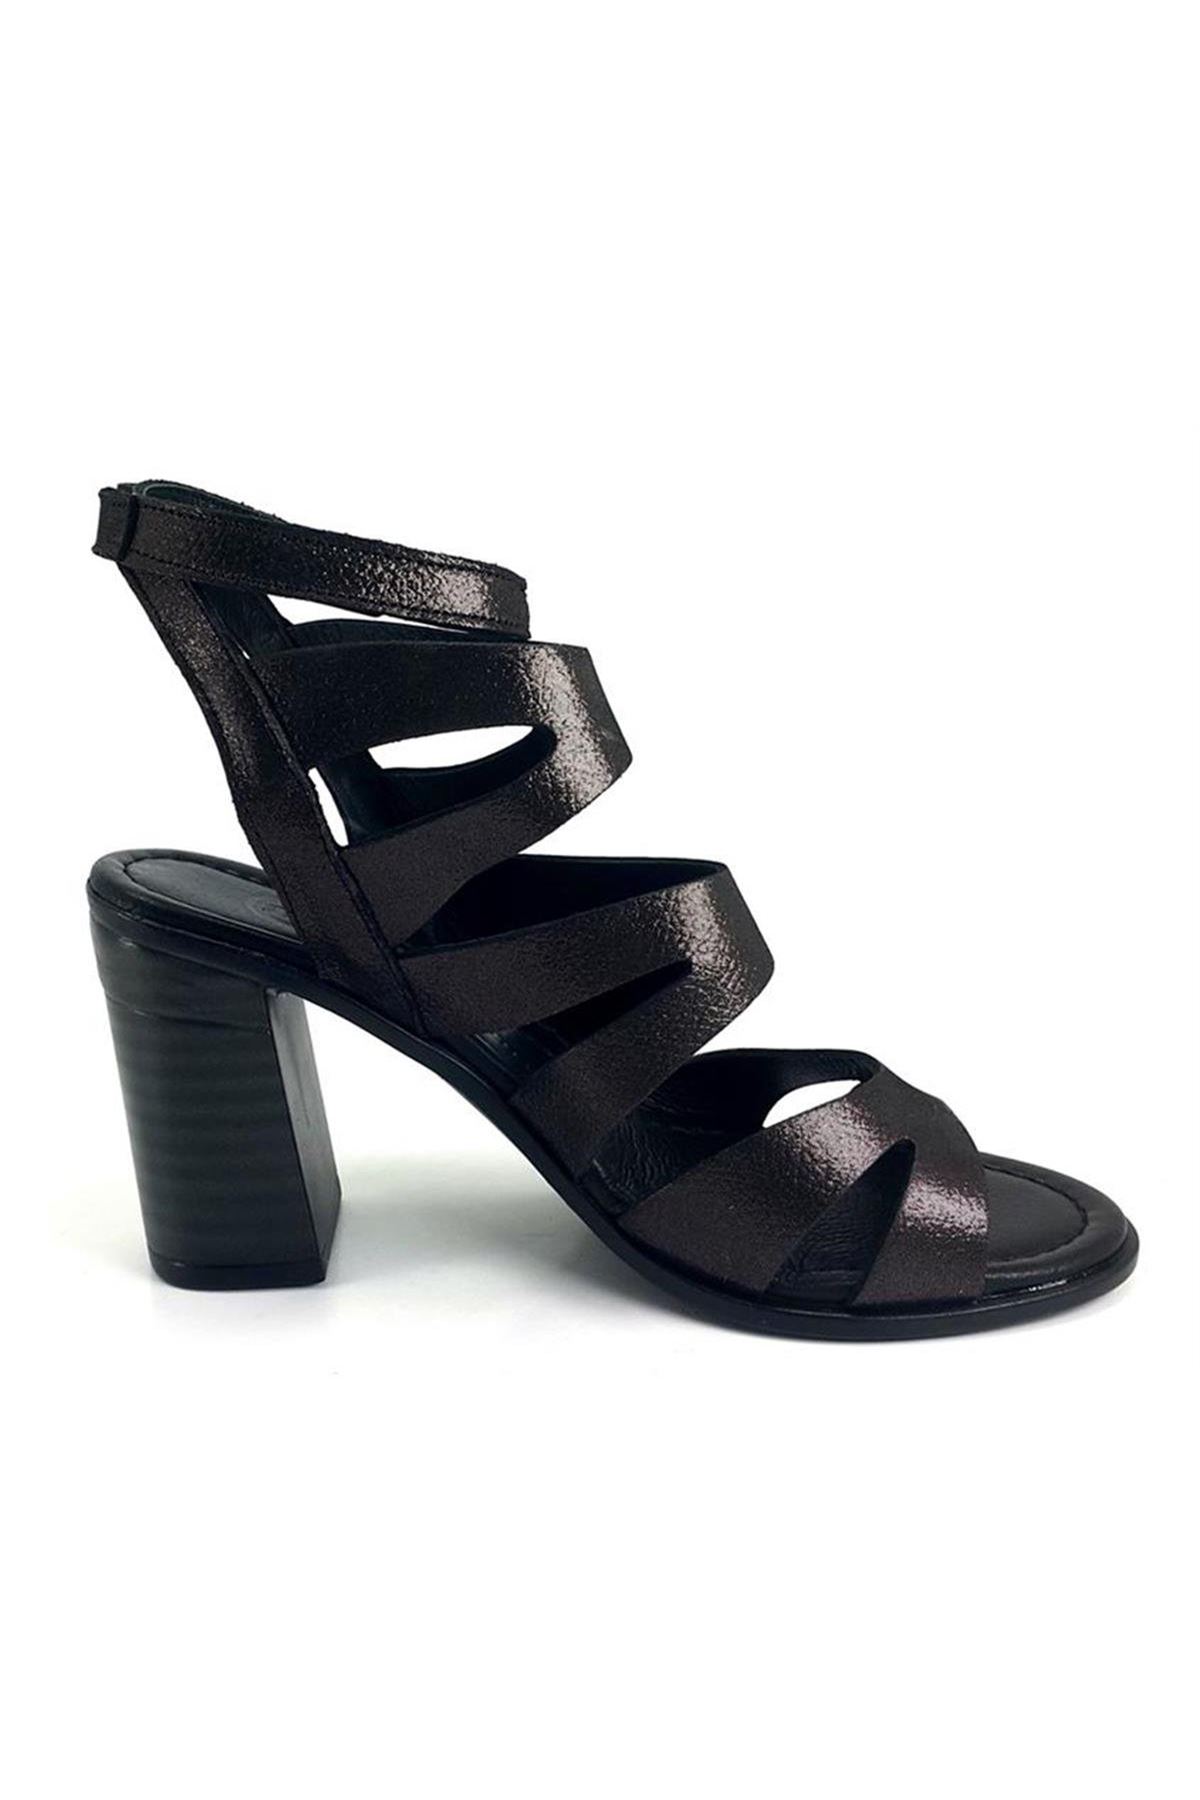 Mammamia D23YS-1330 Hakiki Deri Kadın Sandalet - Siyah Çelik